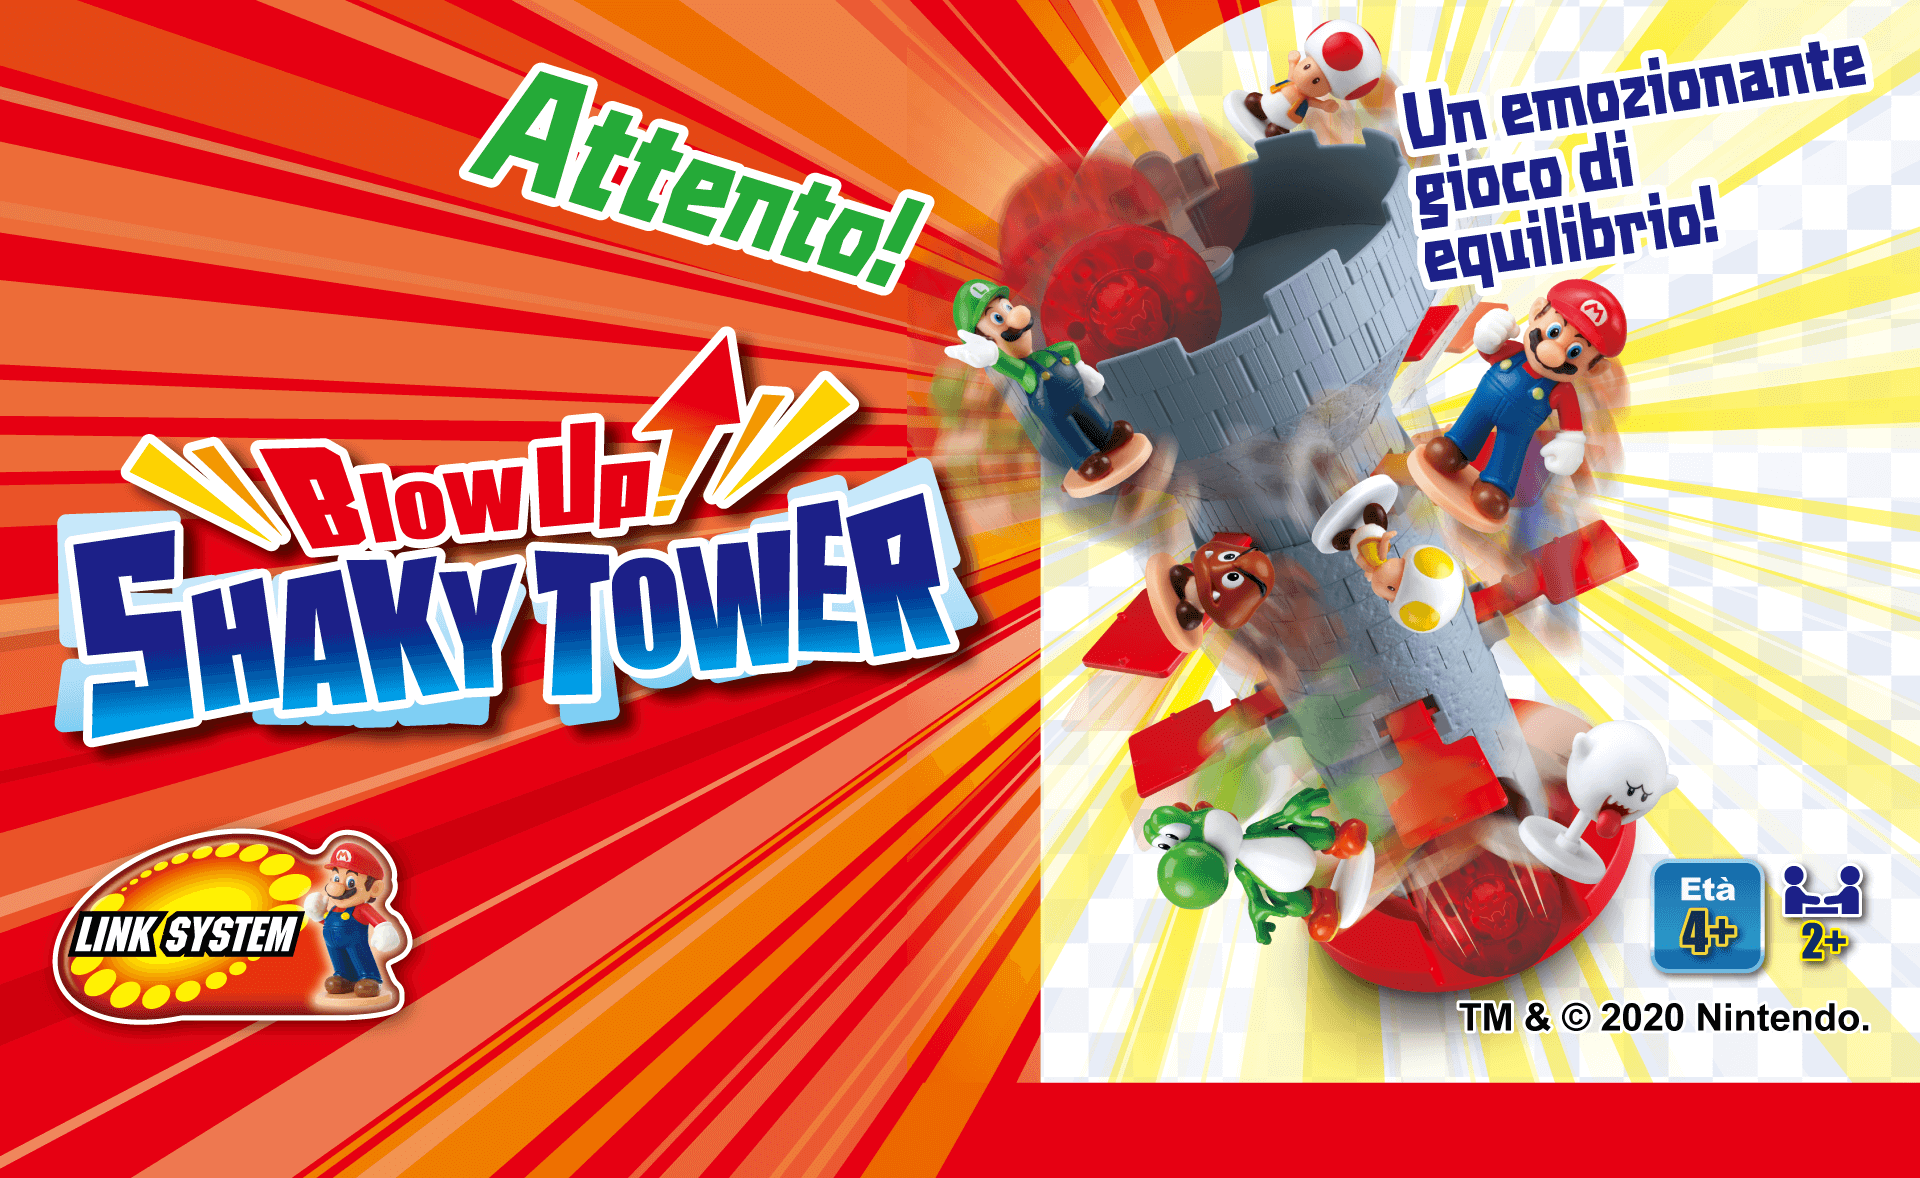 SUPER MARIO Blow UP! SHAKY TOWER